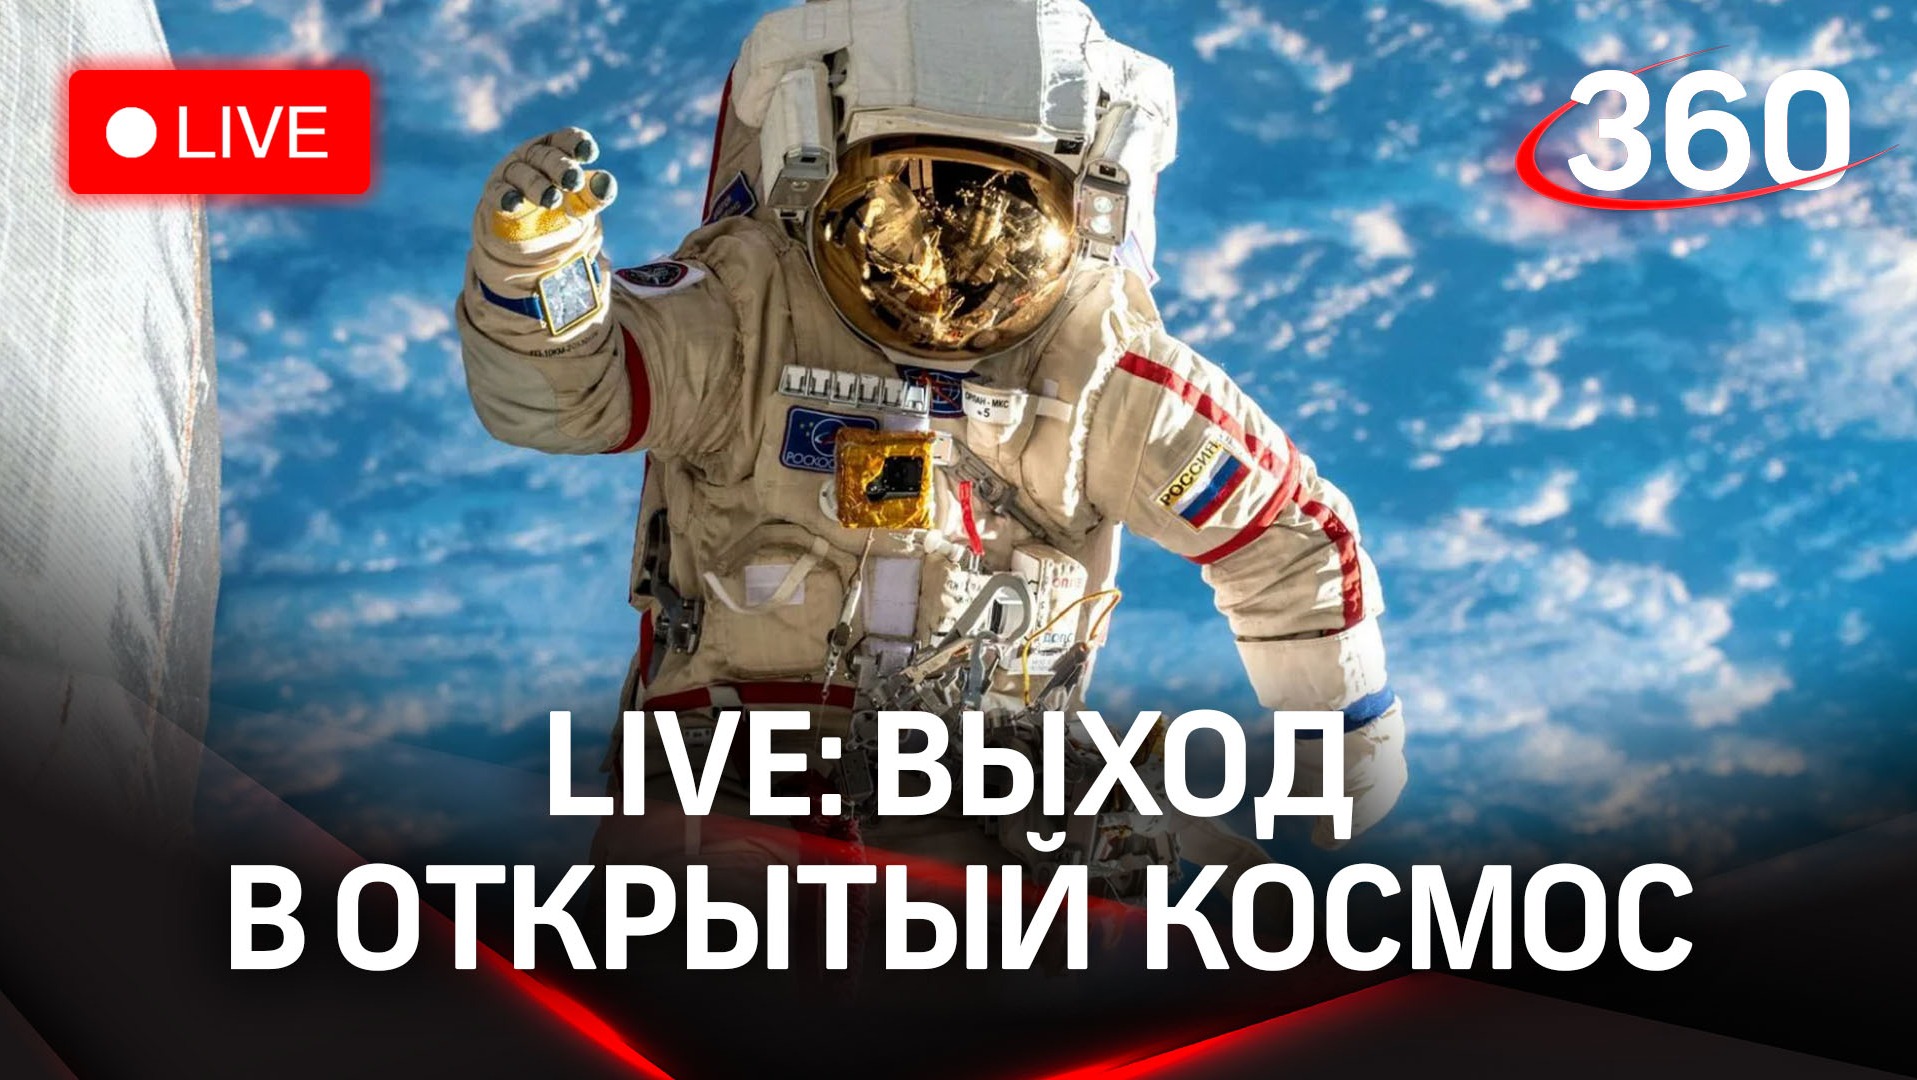 Российские космонавты совершают выход в открытый космос за пределами МКС | Прямая трансляция 